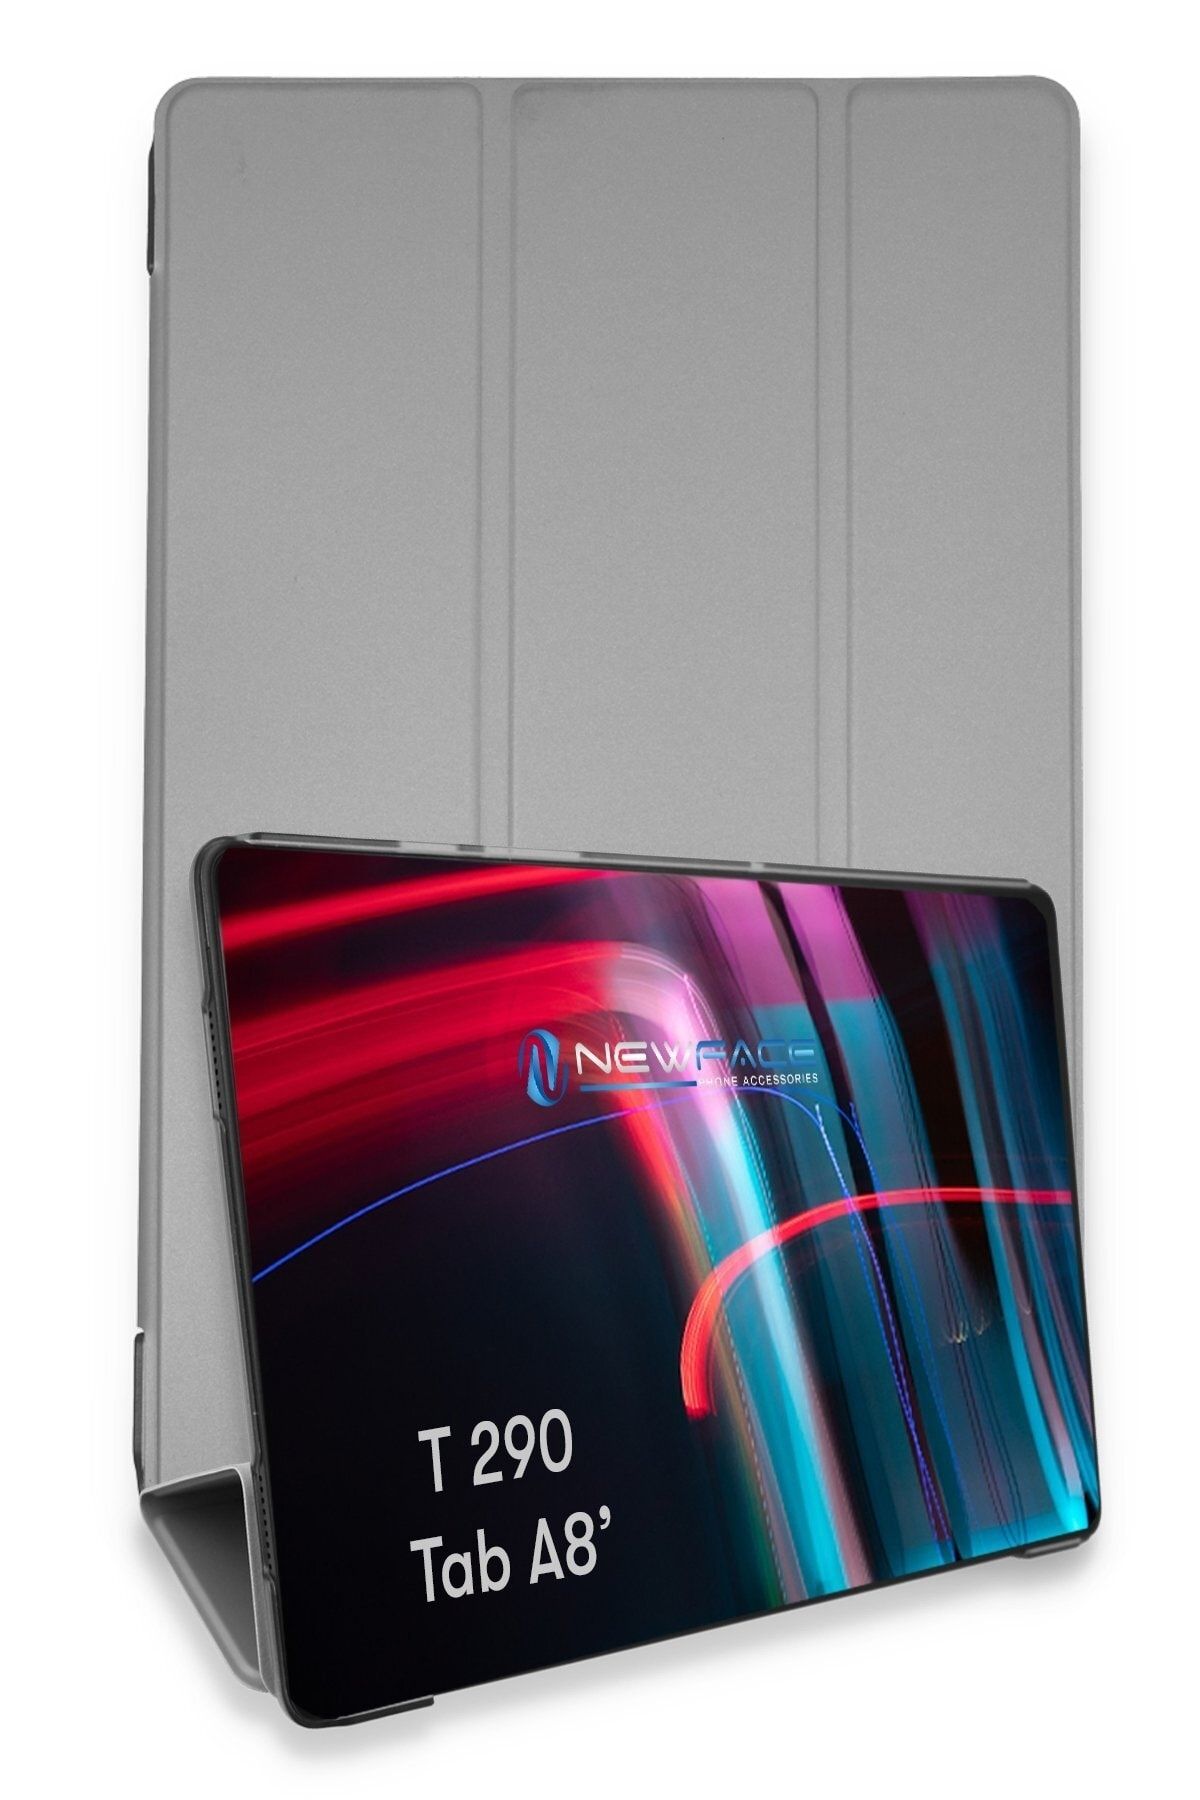 Bilişim Aksesuar Samsung Galaxy T290 Tab A 8 Kılıf Tablet Smart Cover Kılıf - Gri